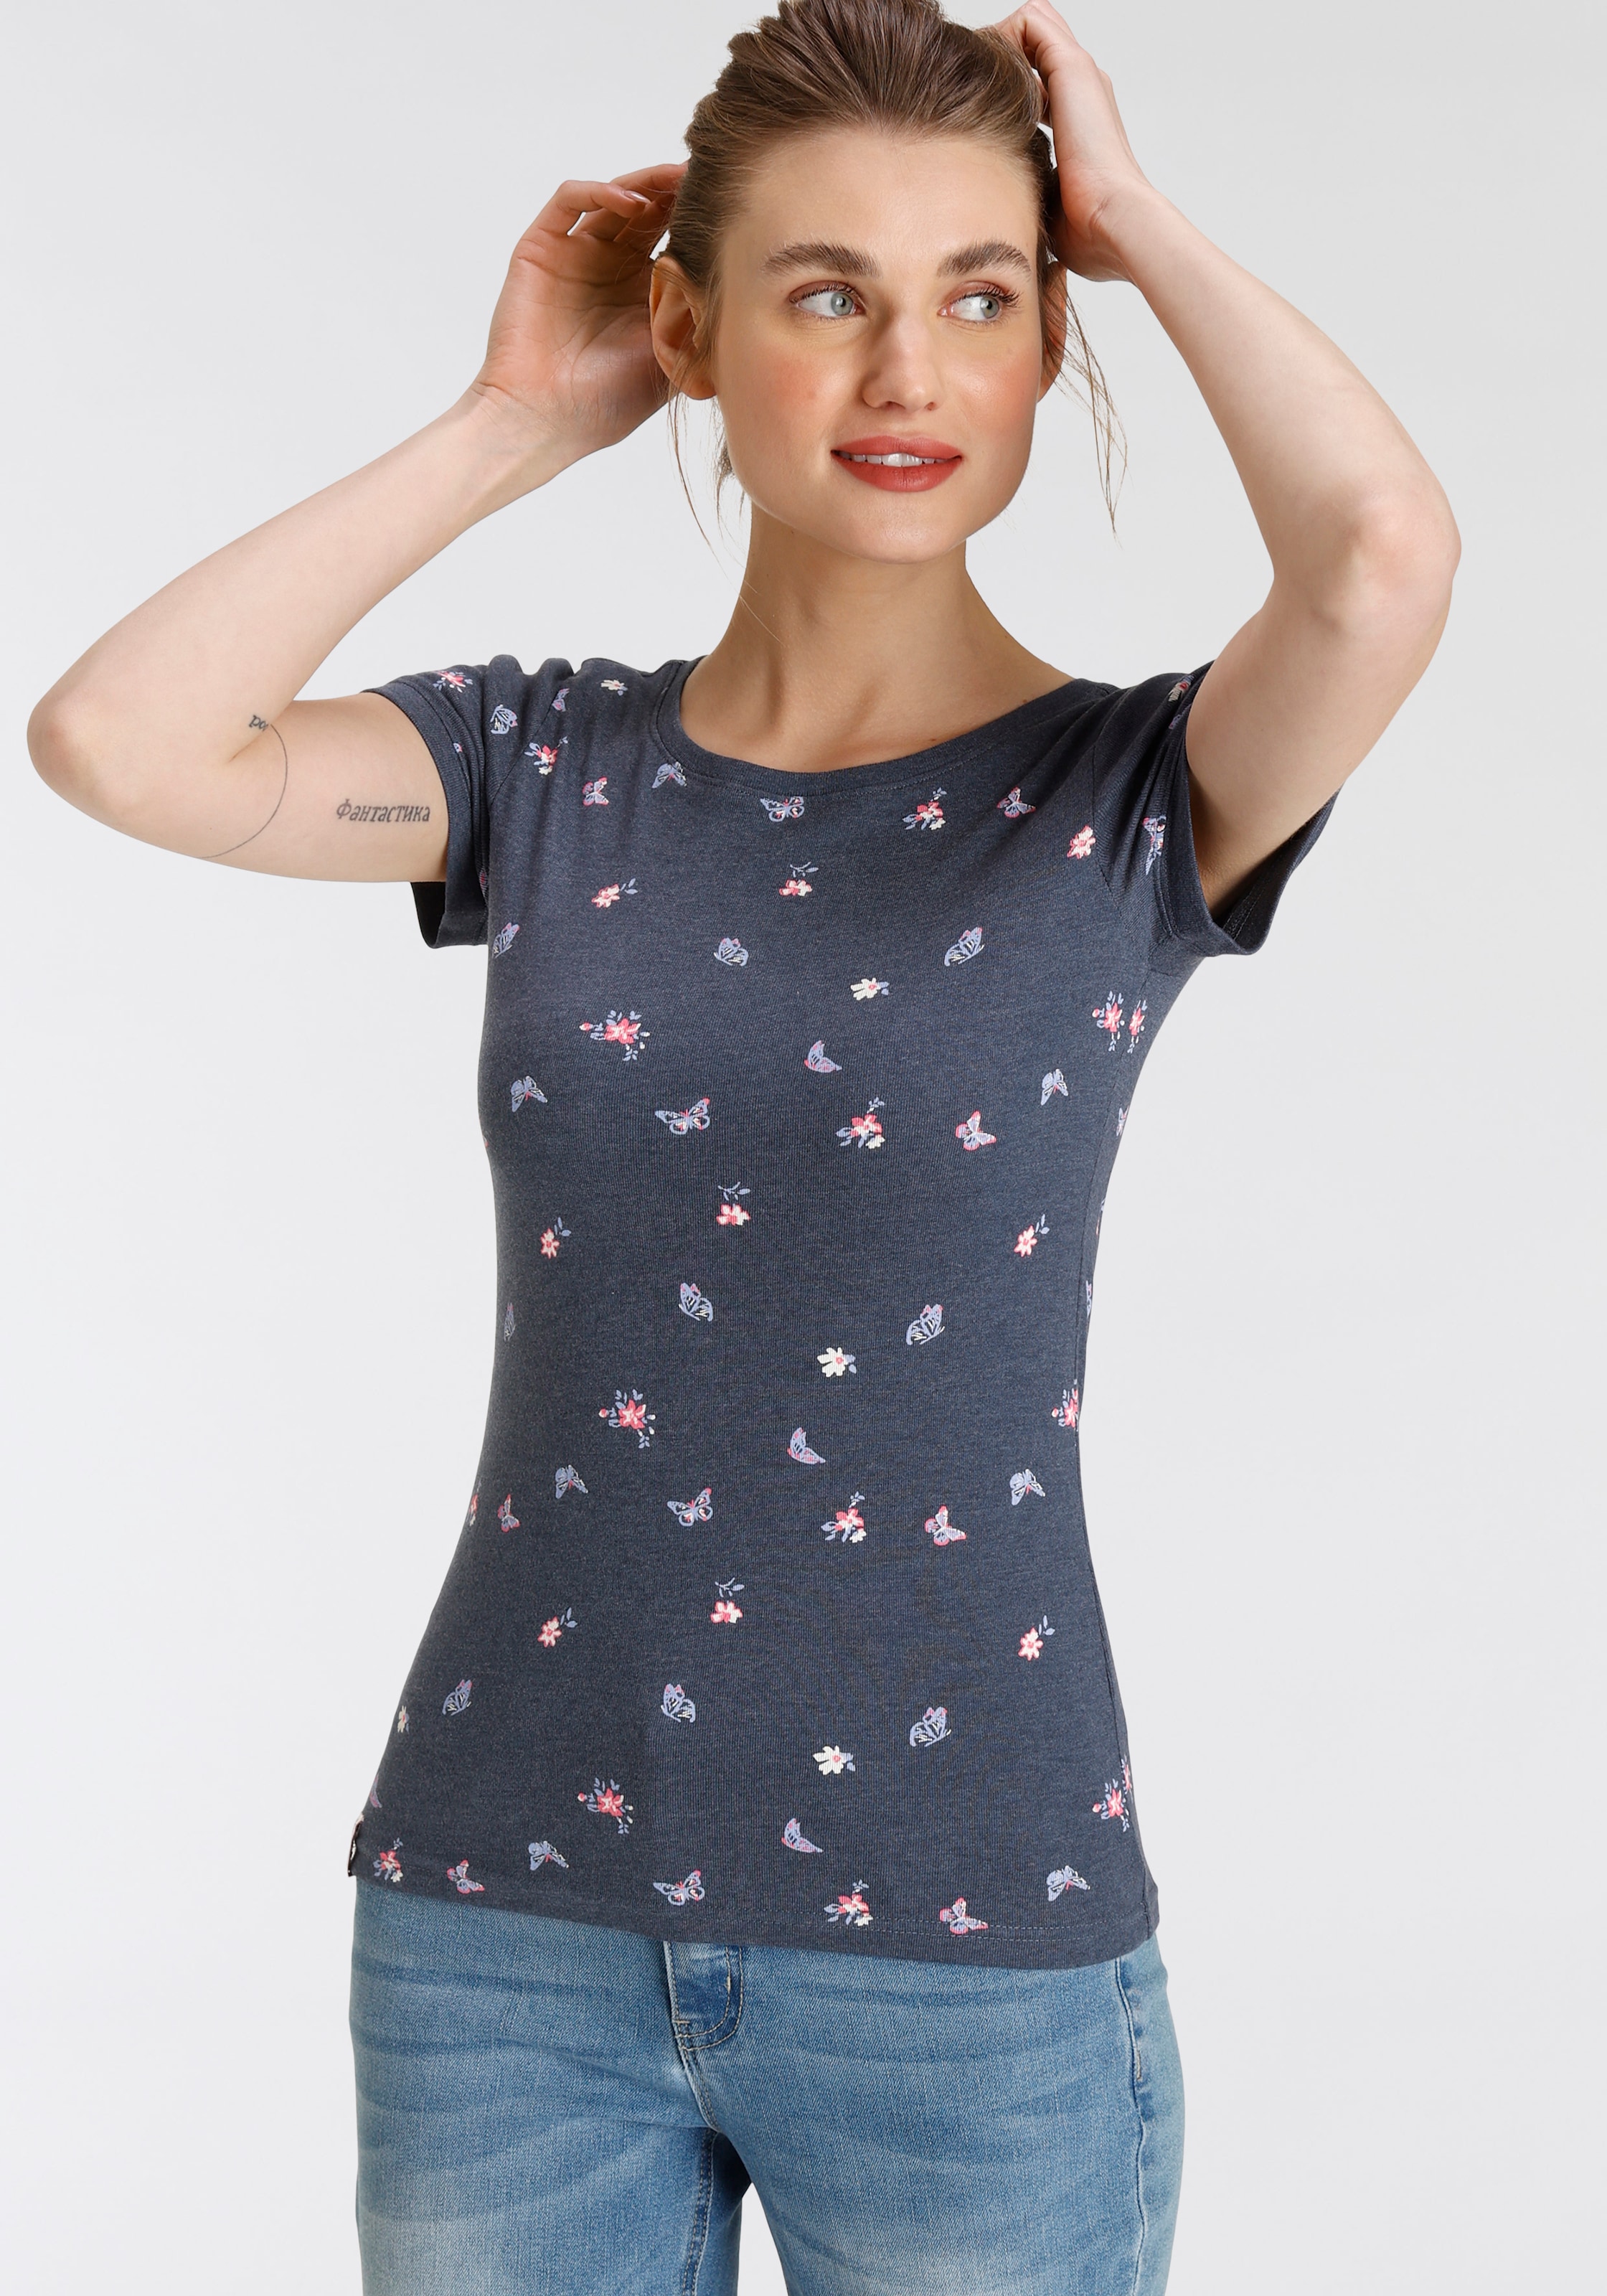 T-Shirt, KOLLEKTION - bei mit Alloverdruck OTTOversand KangaROOS Schmetterling & süßem NEUE - Blumen